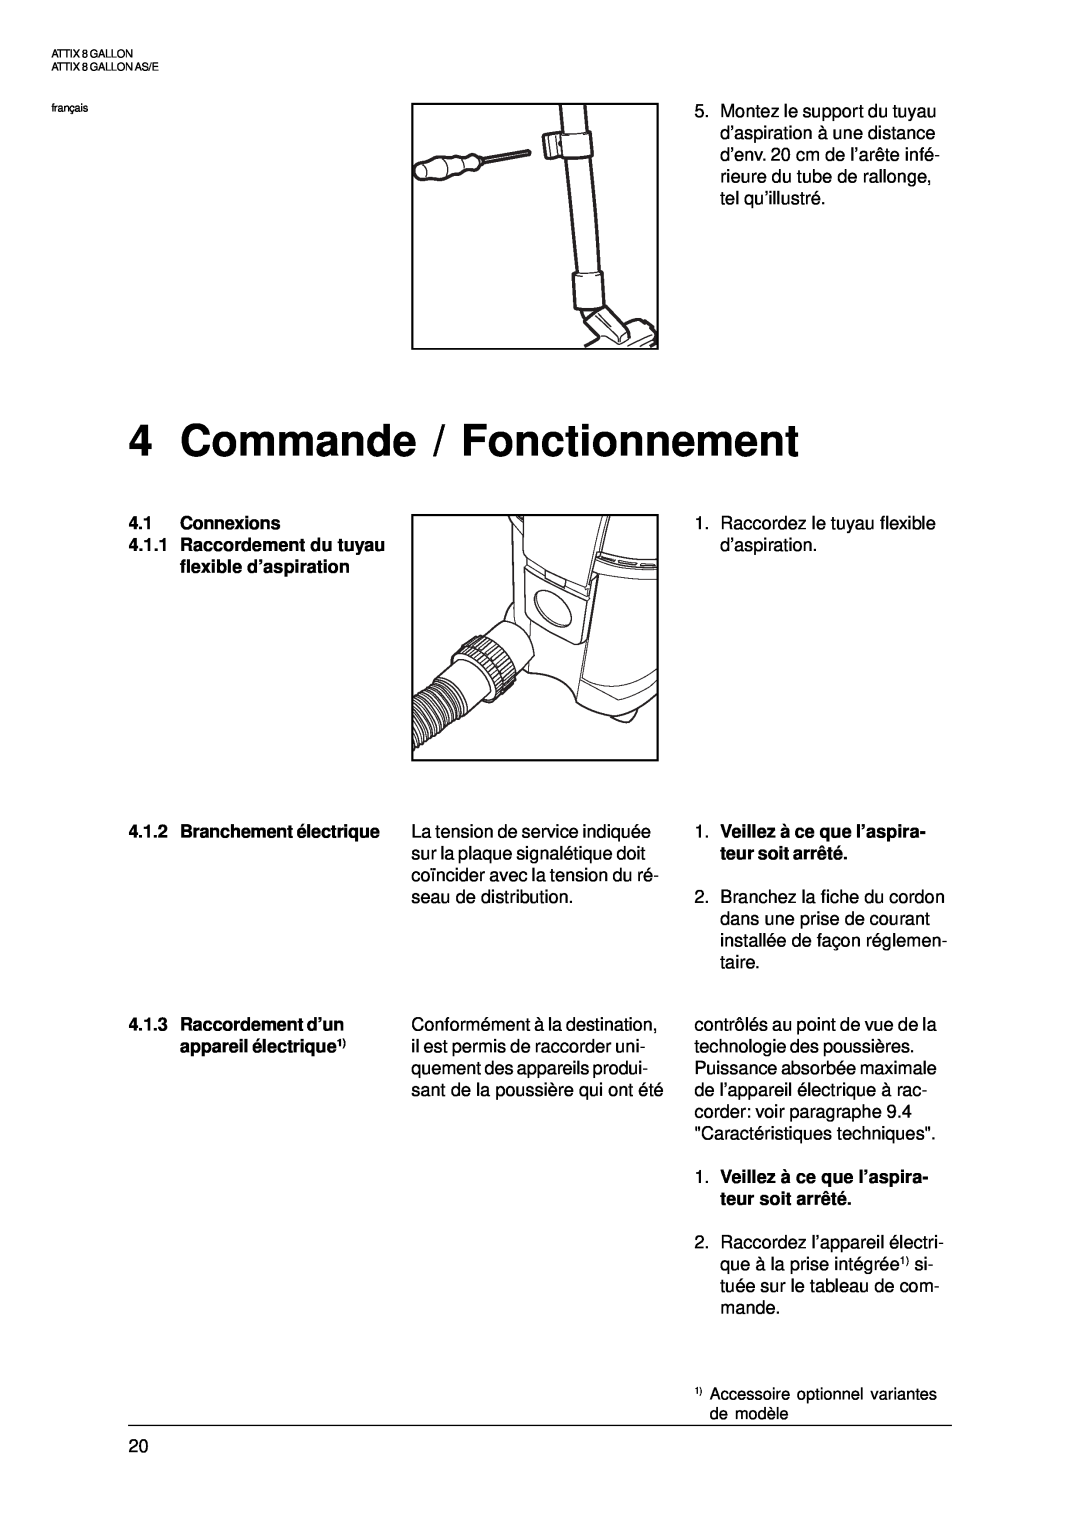 Nilfisk-ALTO 8 GALLON manual Commande / Fonctionnement, 4.1Connexions, 4.1.1Raccordement du tuyau flexible d’aspiration 